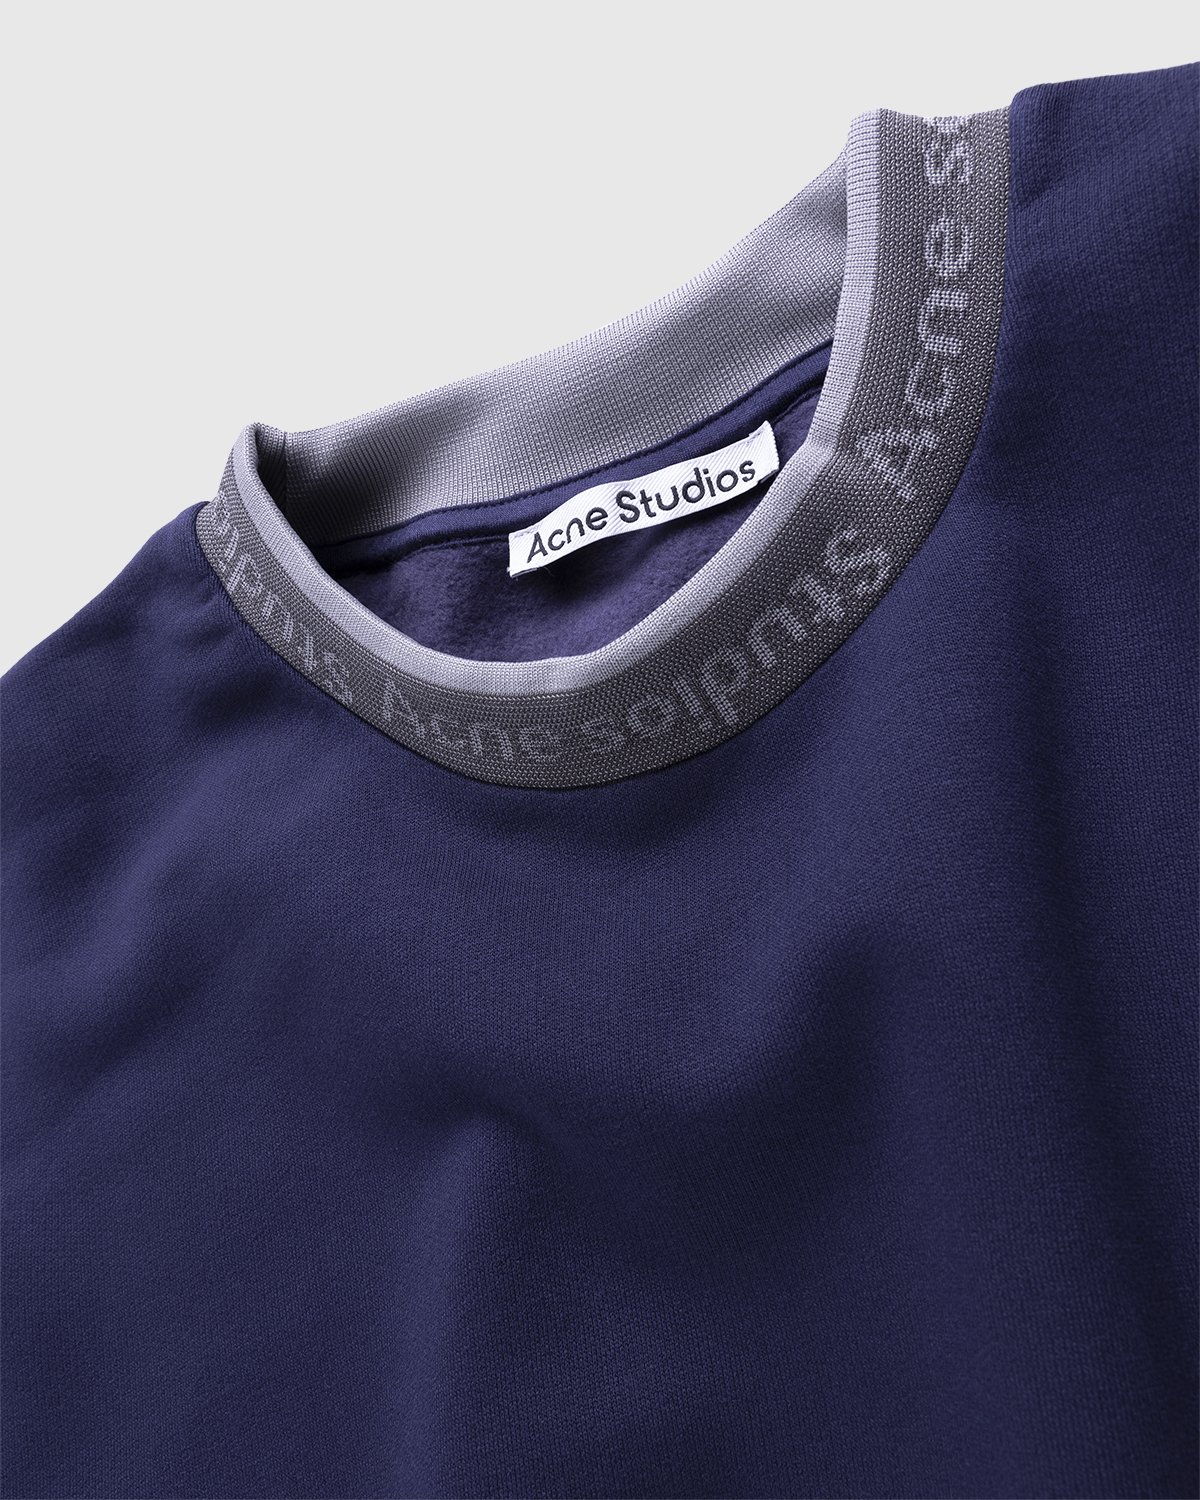 Acne Studios - Logo Rib Sweatshirt Indigo Blue - Clothing - Blue - Image 3